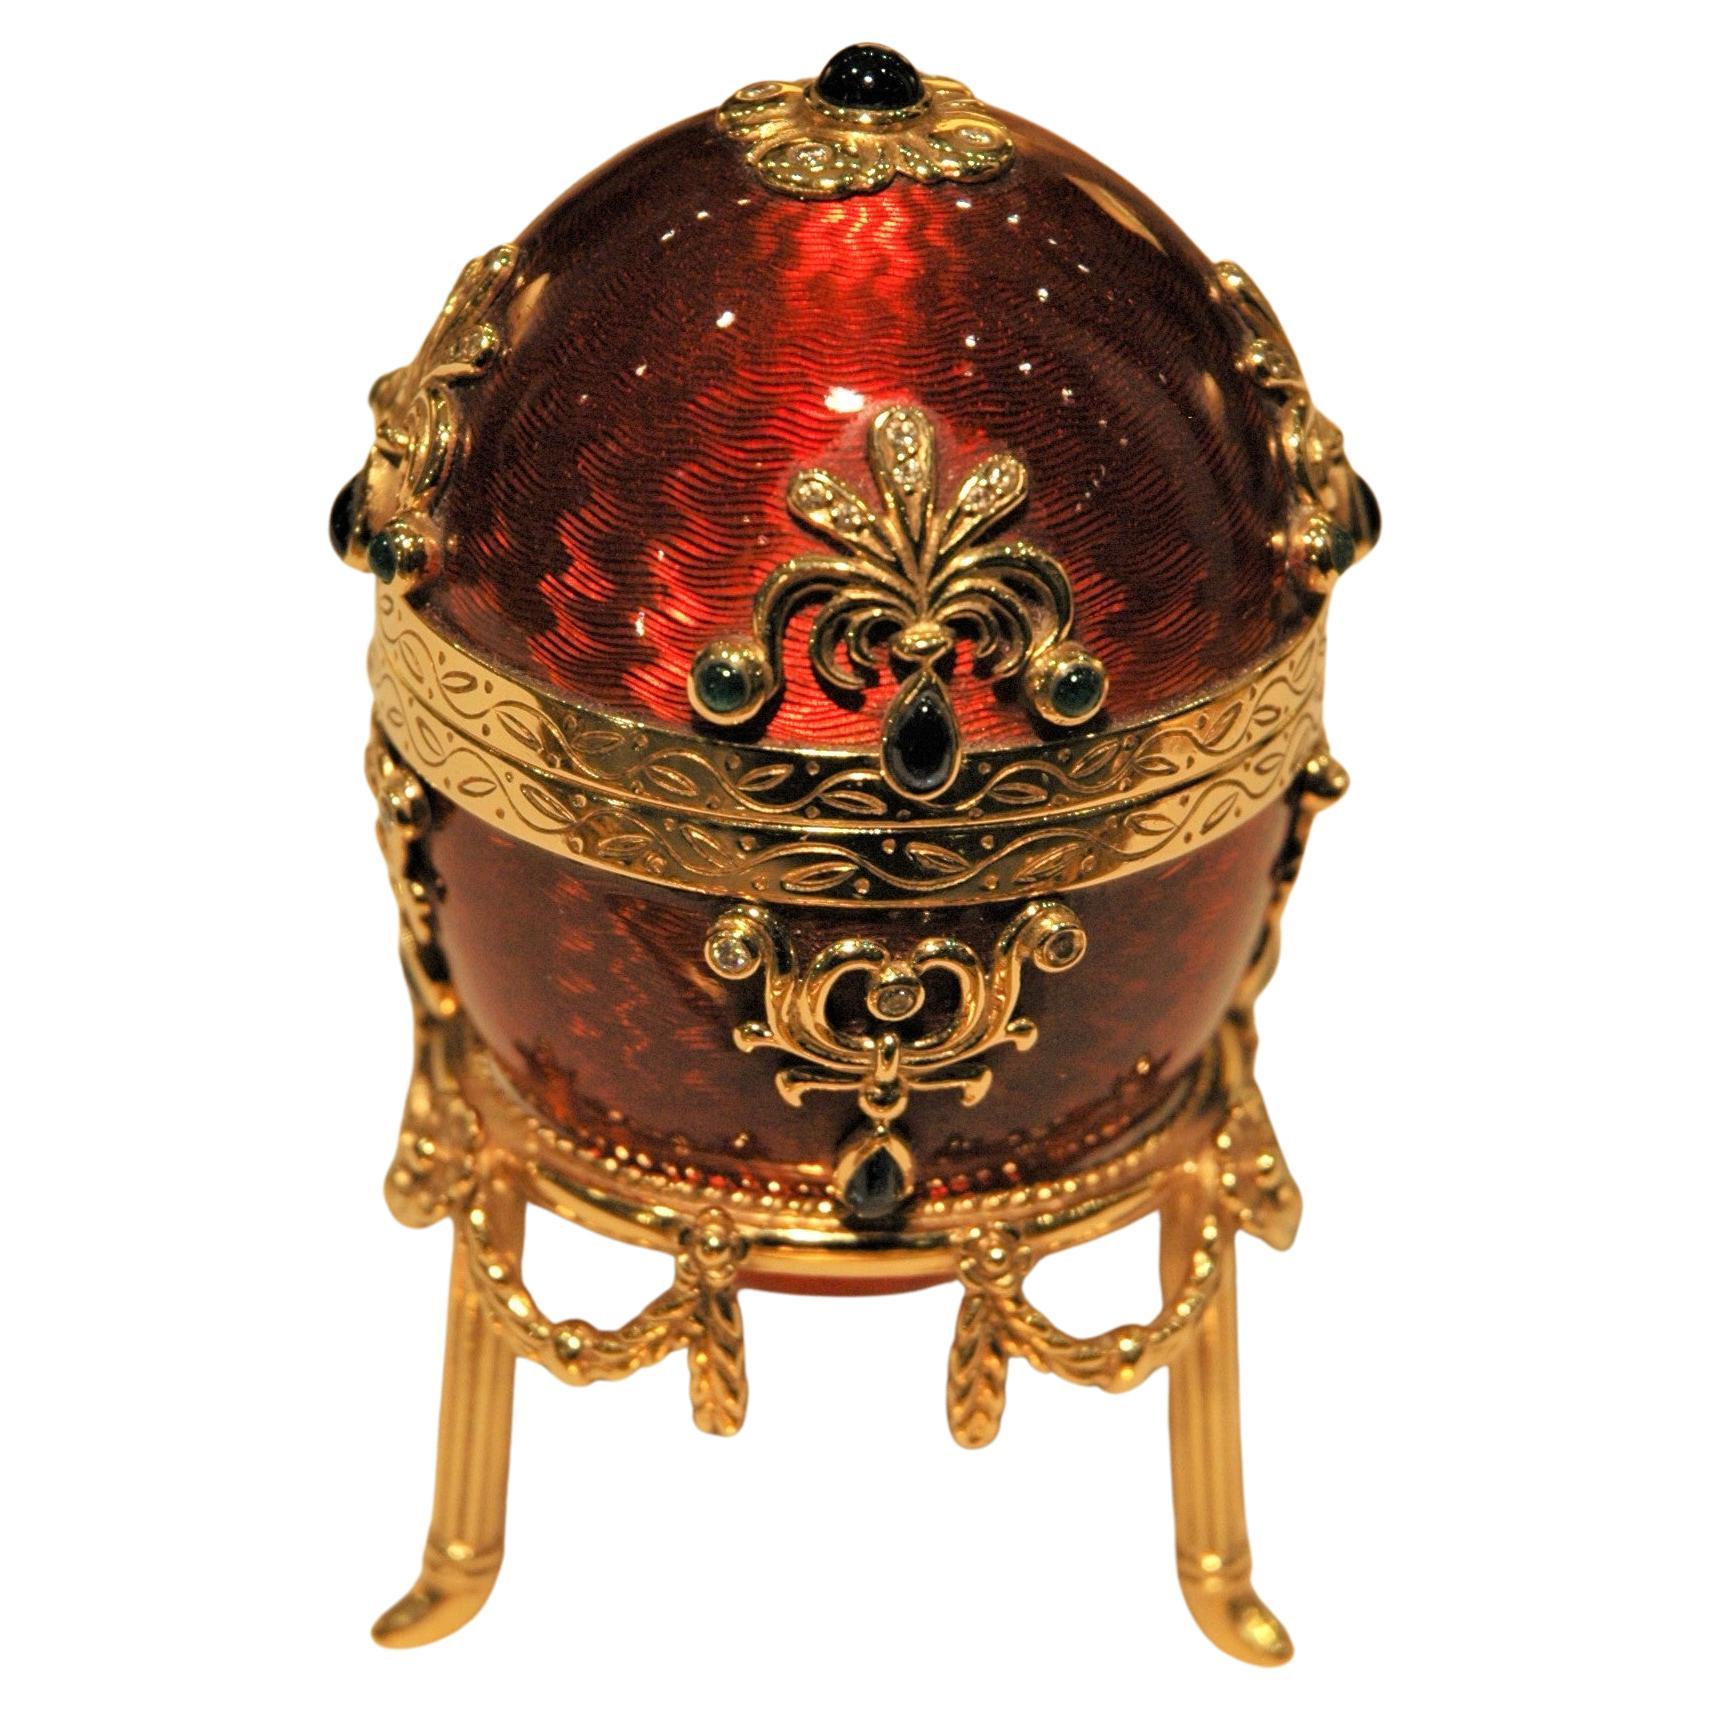 Fabergé 18 Kt Gold Egg Red Enamel with Gold Stand, Emeralds, Sapphires, Diamonds (Oeuf en or 18 Kt émaillé rouge avec Stand en or, émeraudes, saphirs, diamants)